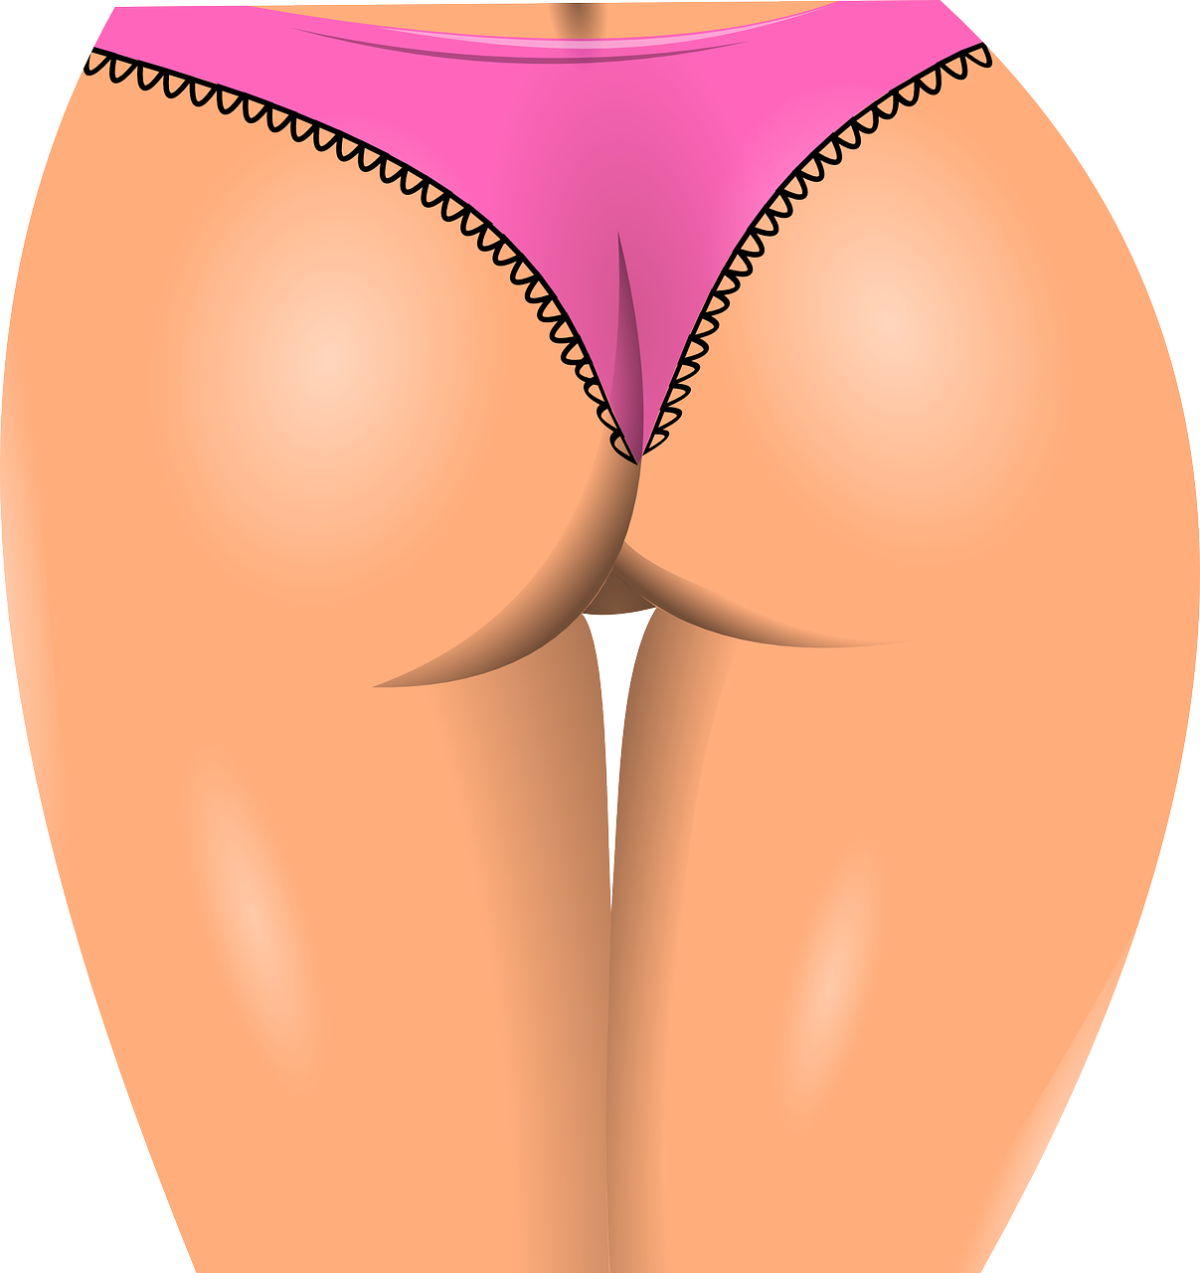 Brak tolerancji wyglądu warg sromowych są motywami konsultacji kobiet z ginekologiem lub chirurgiem plastycznym.